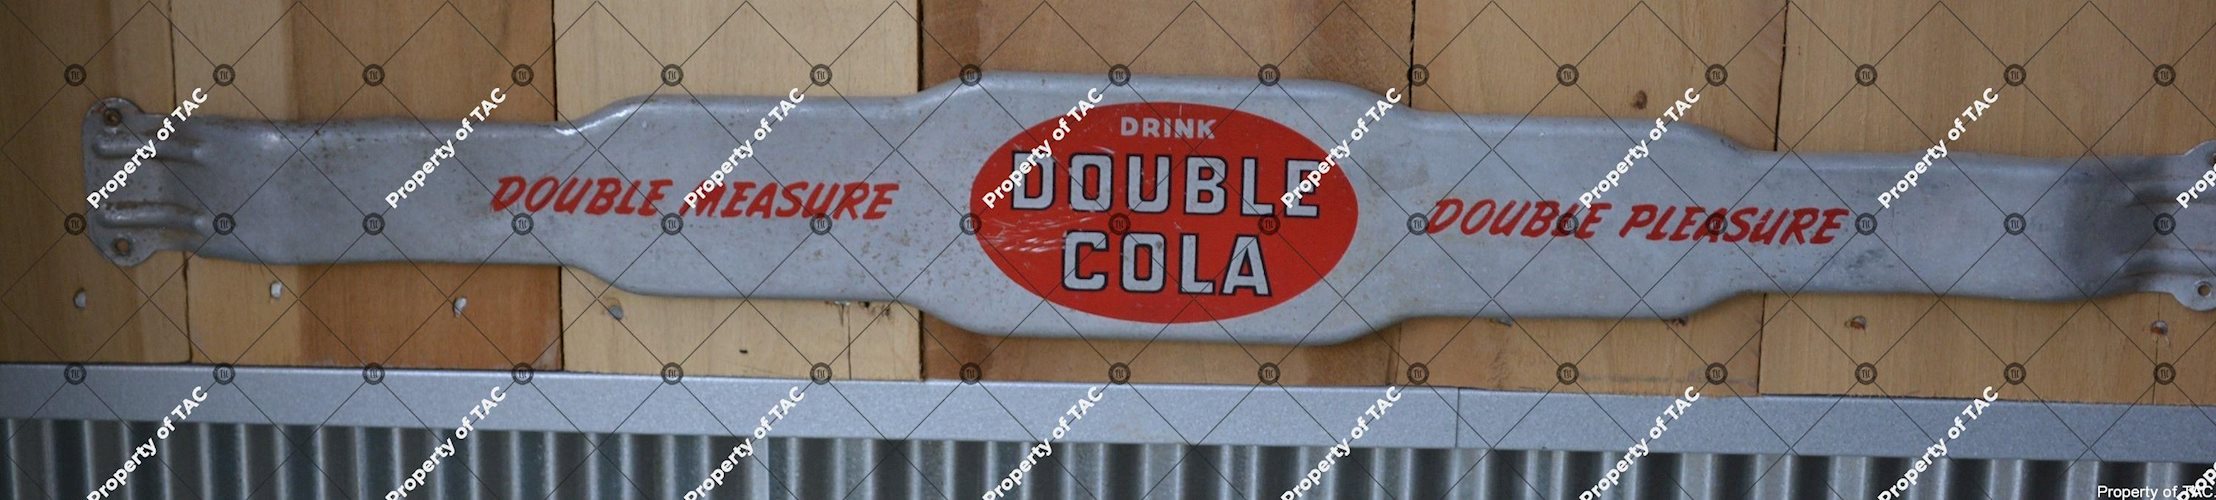 Drink Double Cola Double Measure Double Pleasure" door push"